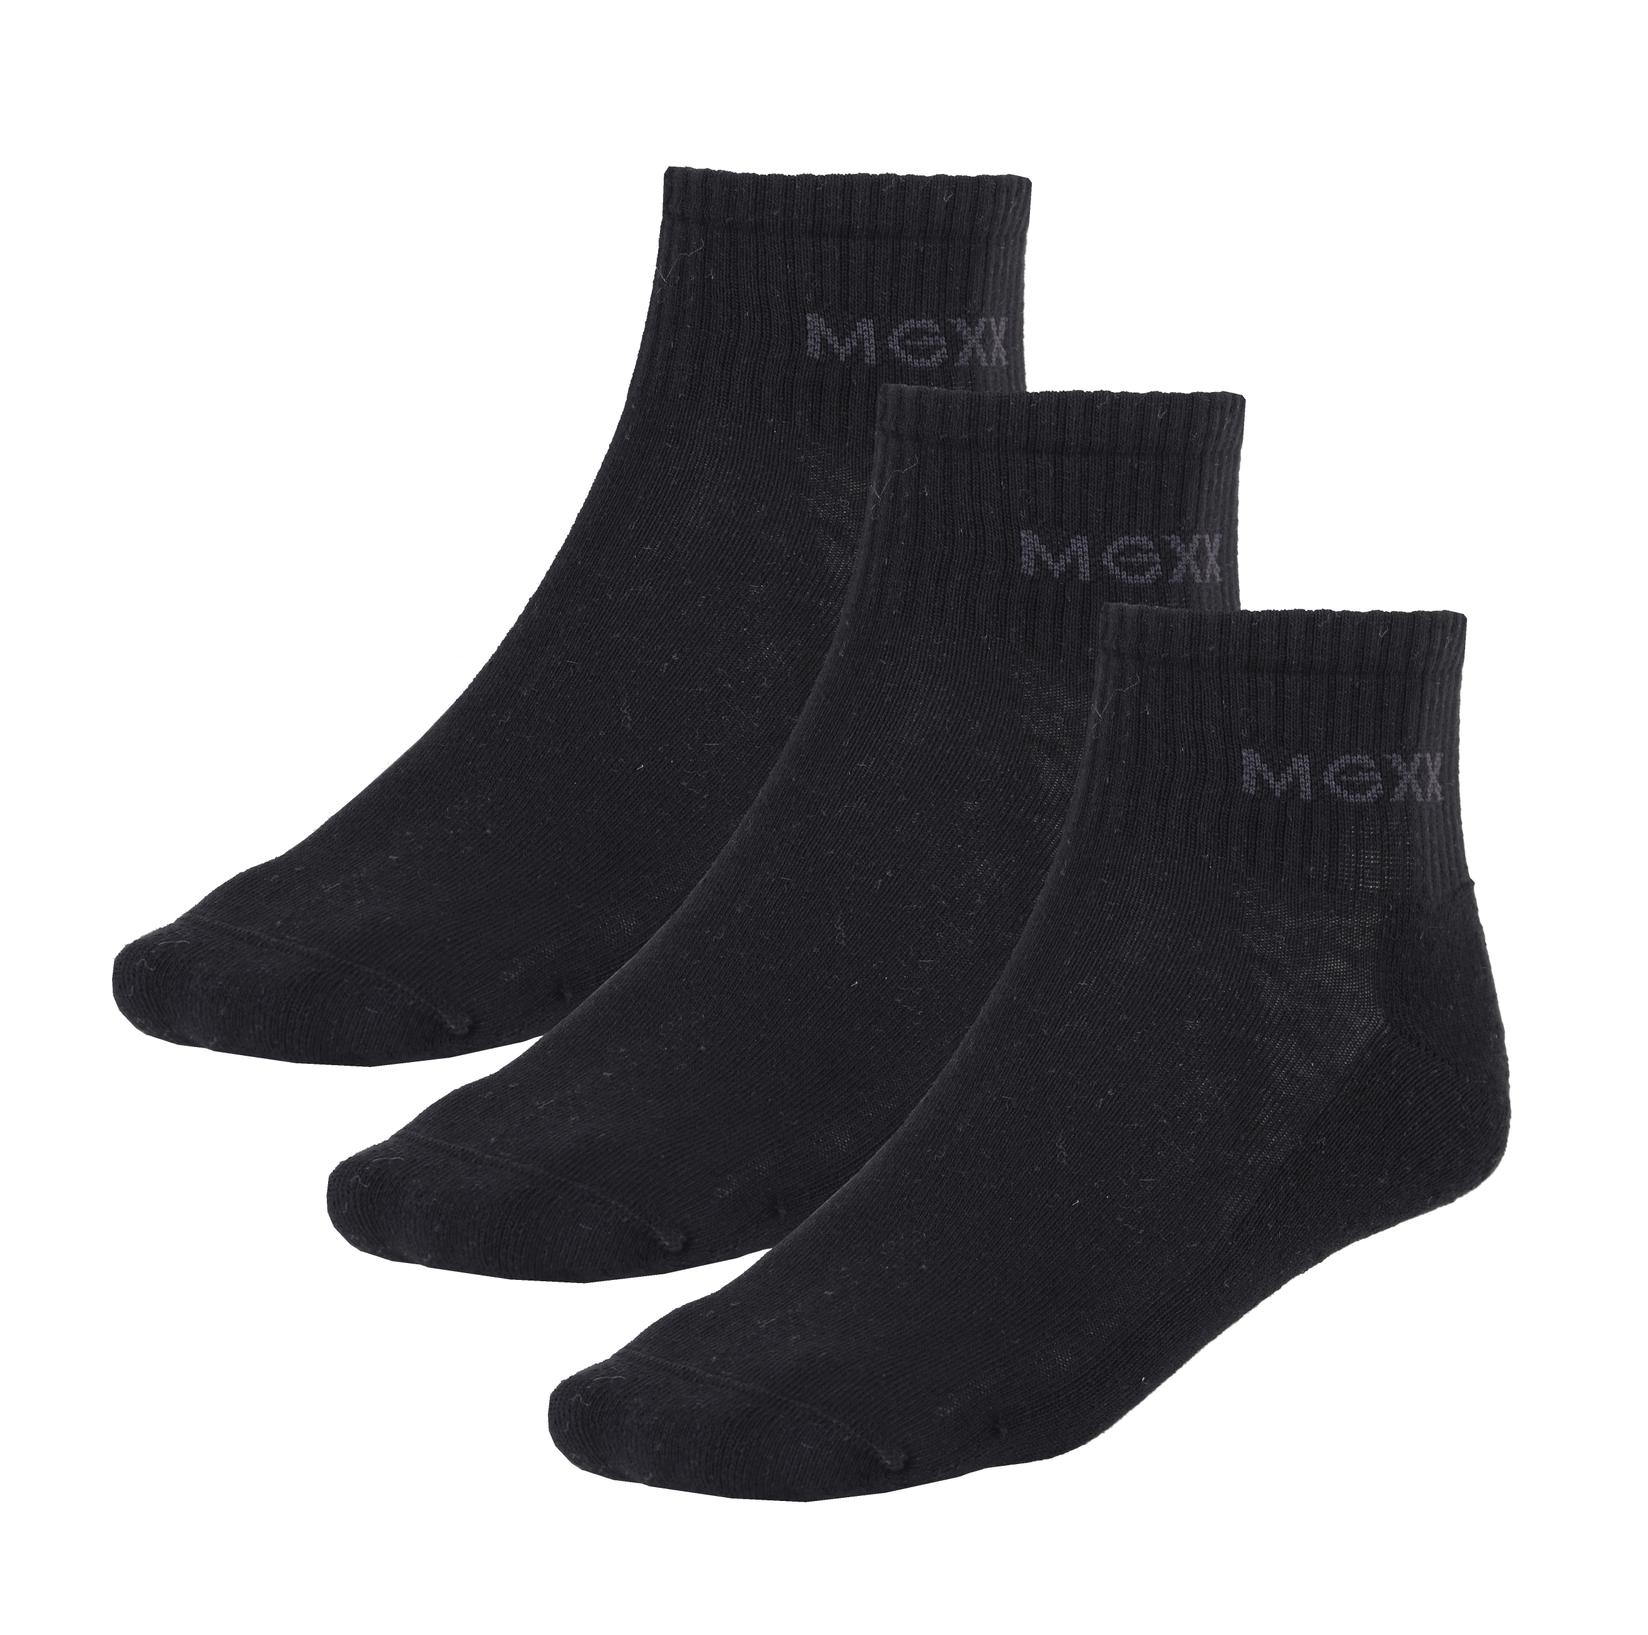 Selected image for MEXX Sportske čarape Quarter, Pakovanje od 3 para, Crne